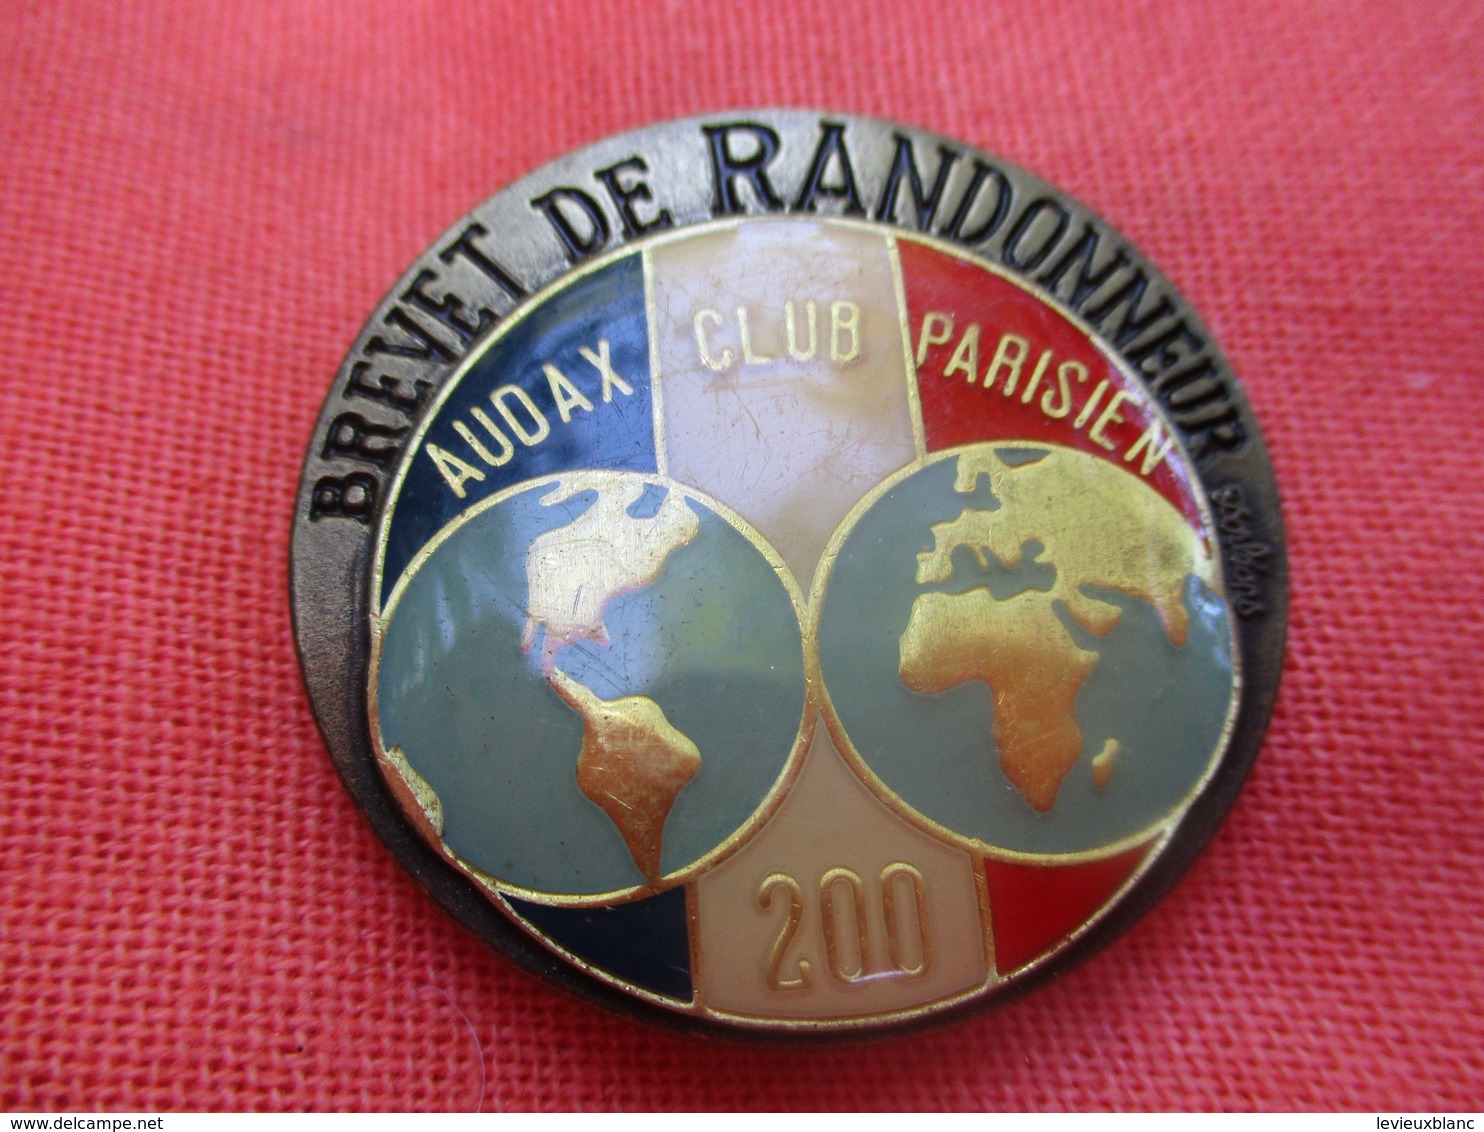 Insigne De Sport  à épingle/ Cyclisme/  Audax Club Parisien/Brevet De RANDONNEUR/200 Km/Beraudy/Vers 1980         SPO304 - Wielrennen